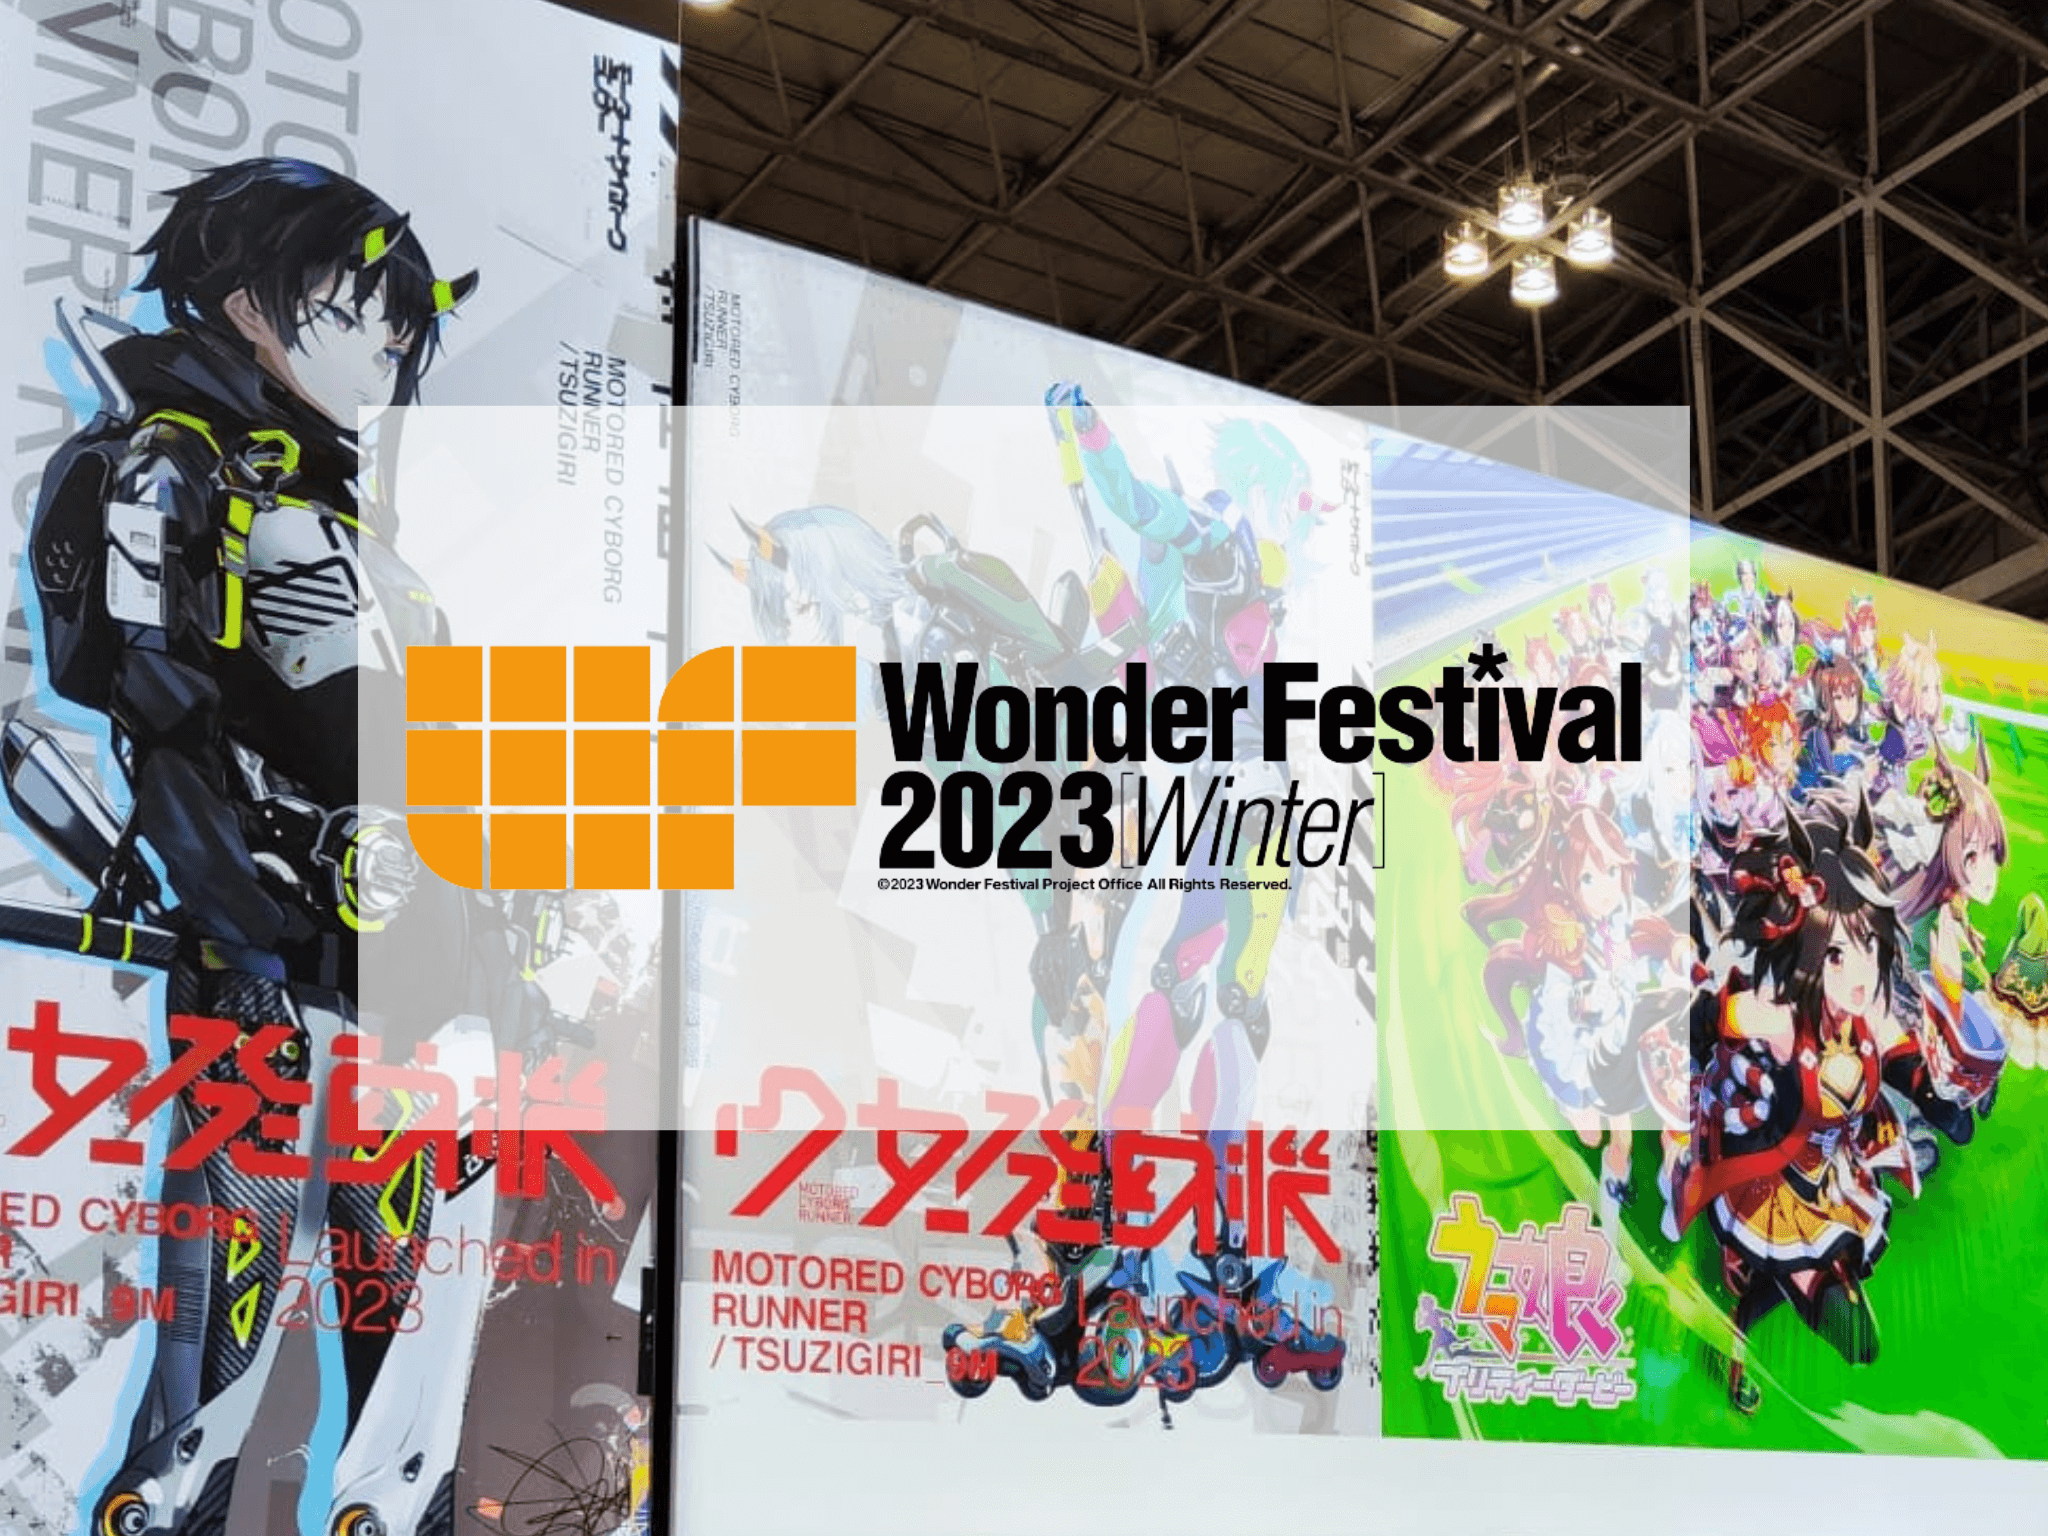 Wonder Festival 2023 Winter